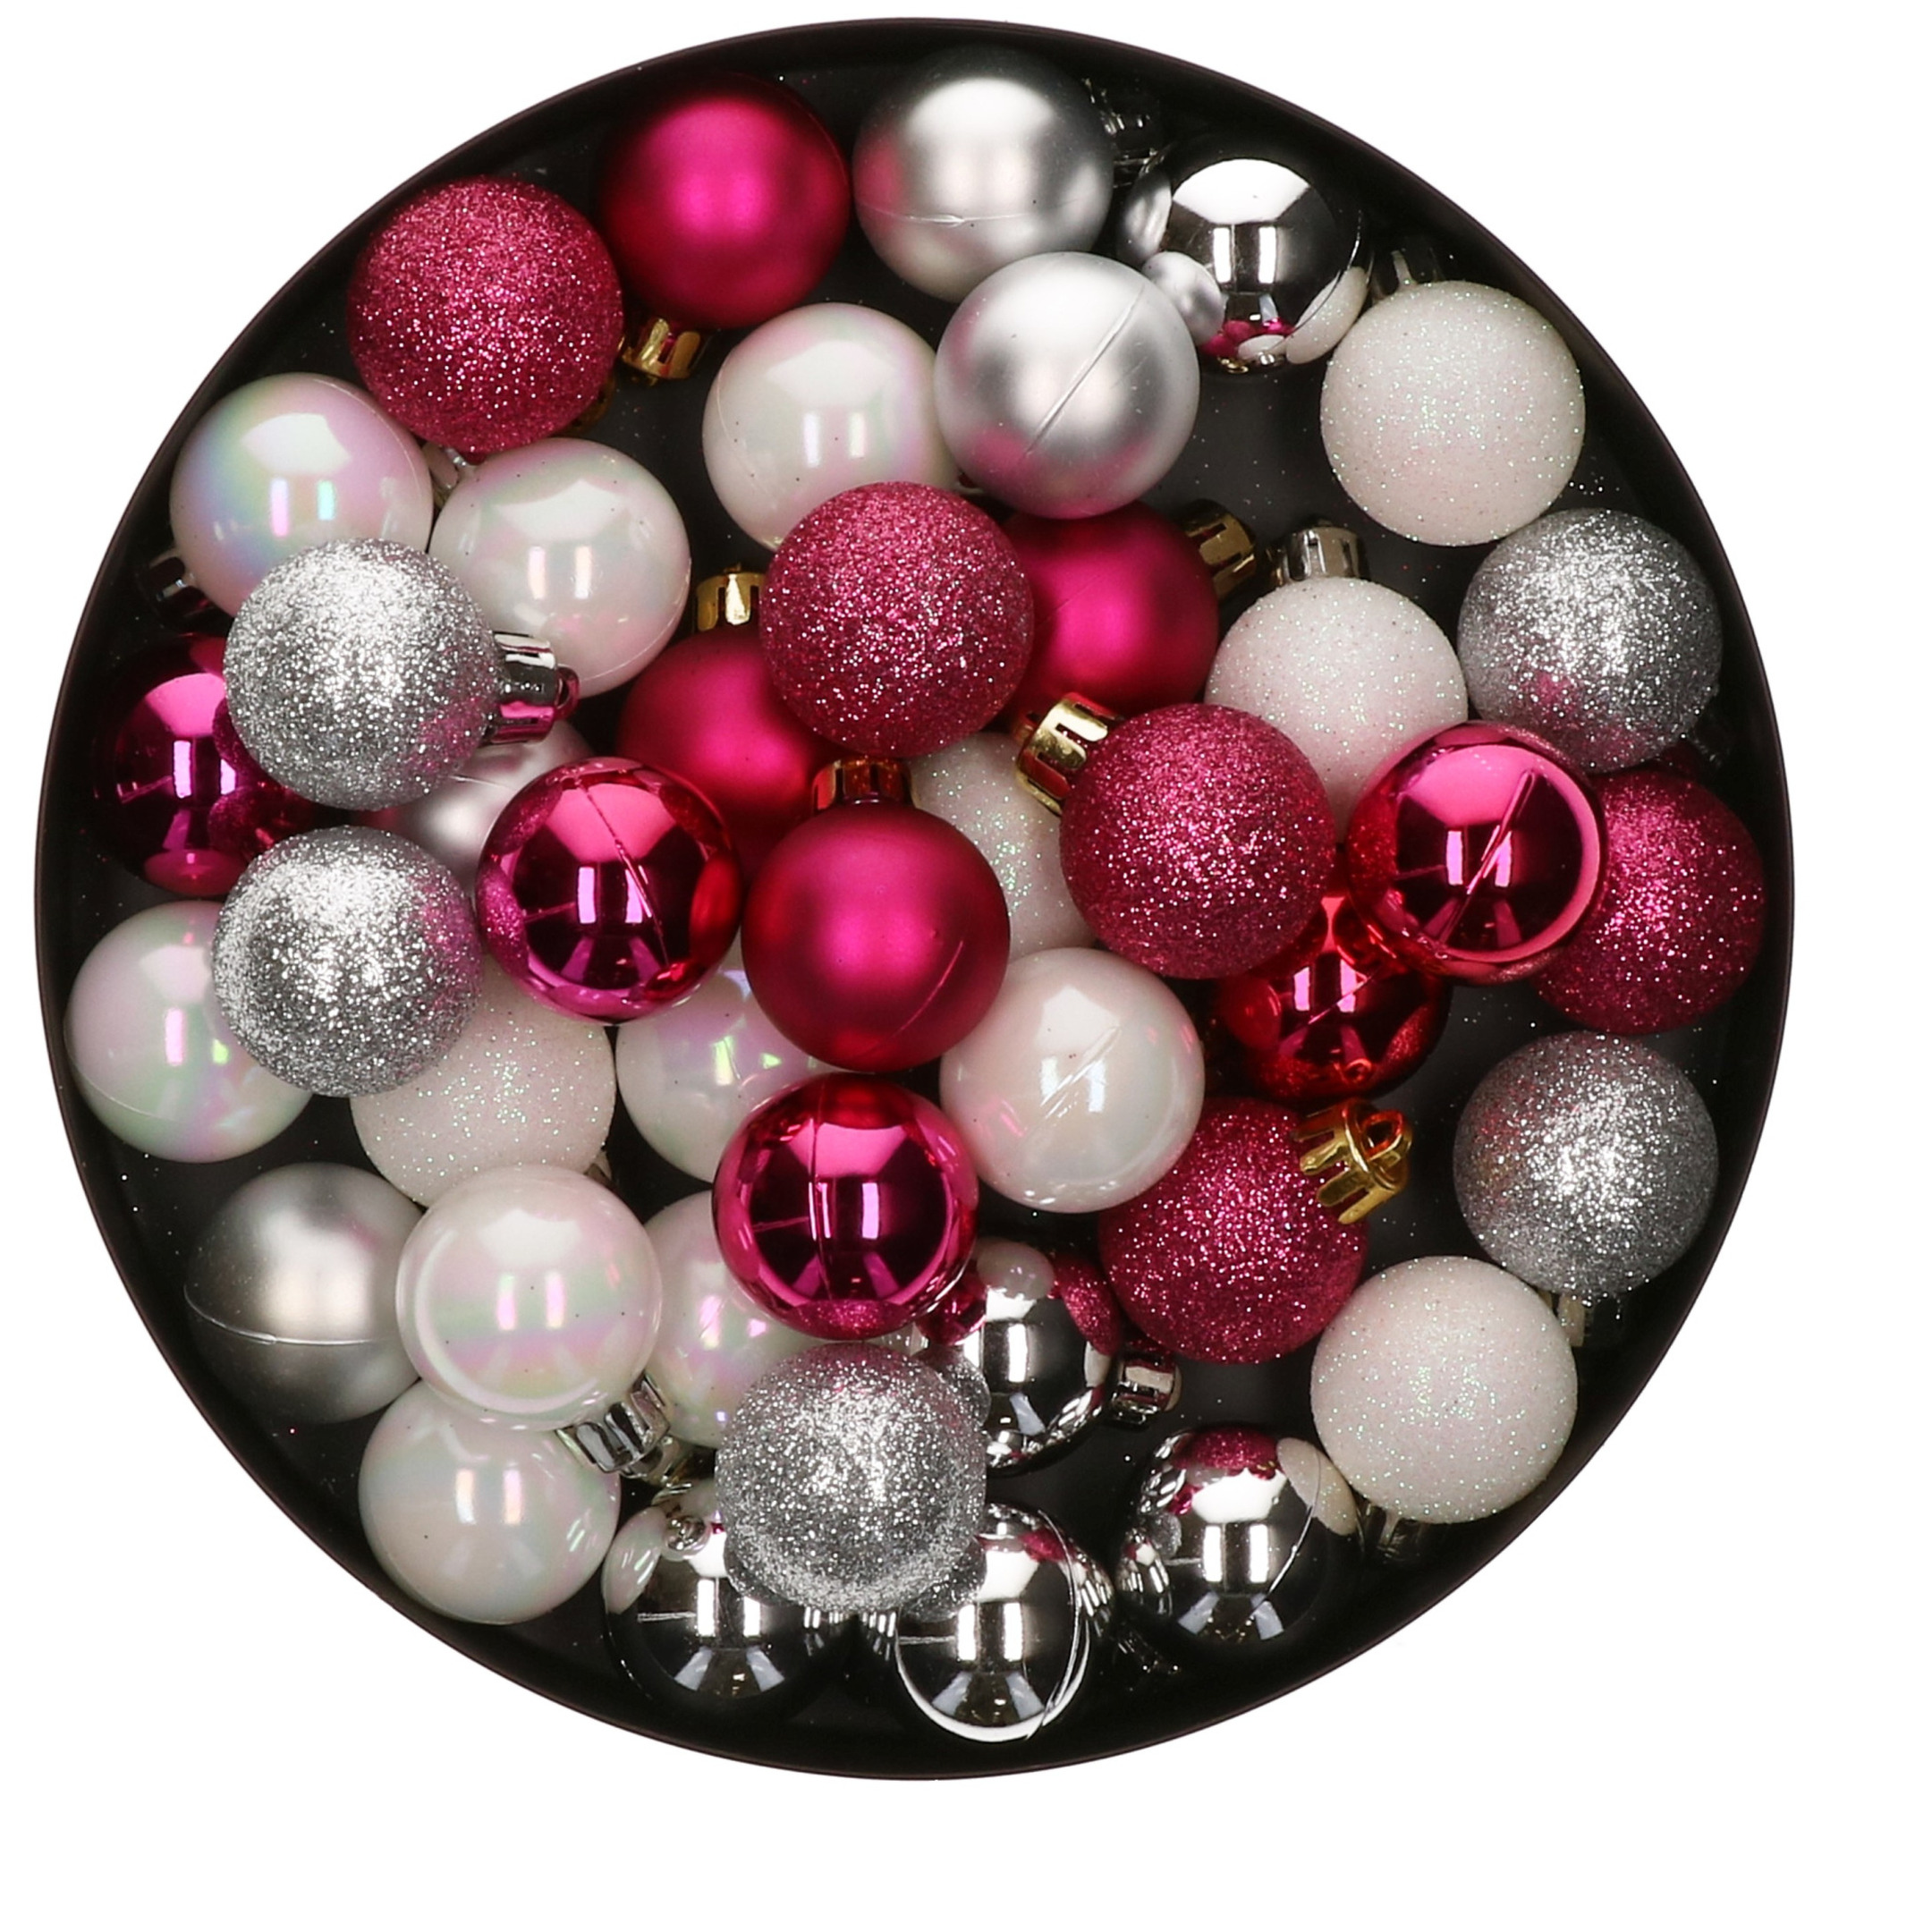 42x Stuks kunststof kerstballen mix bessen roze-zilver-parelmoer wit 3 cm